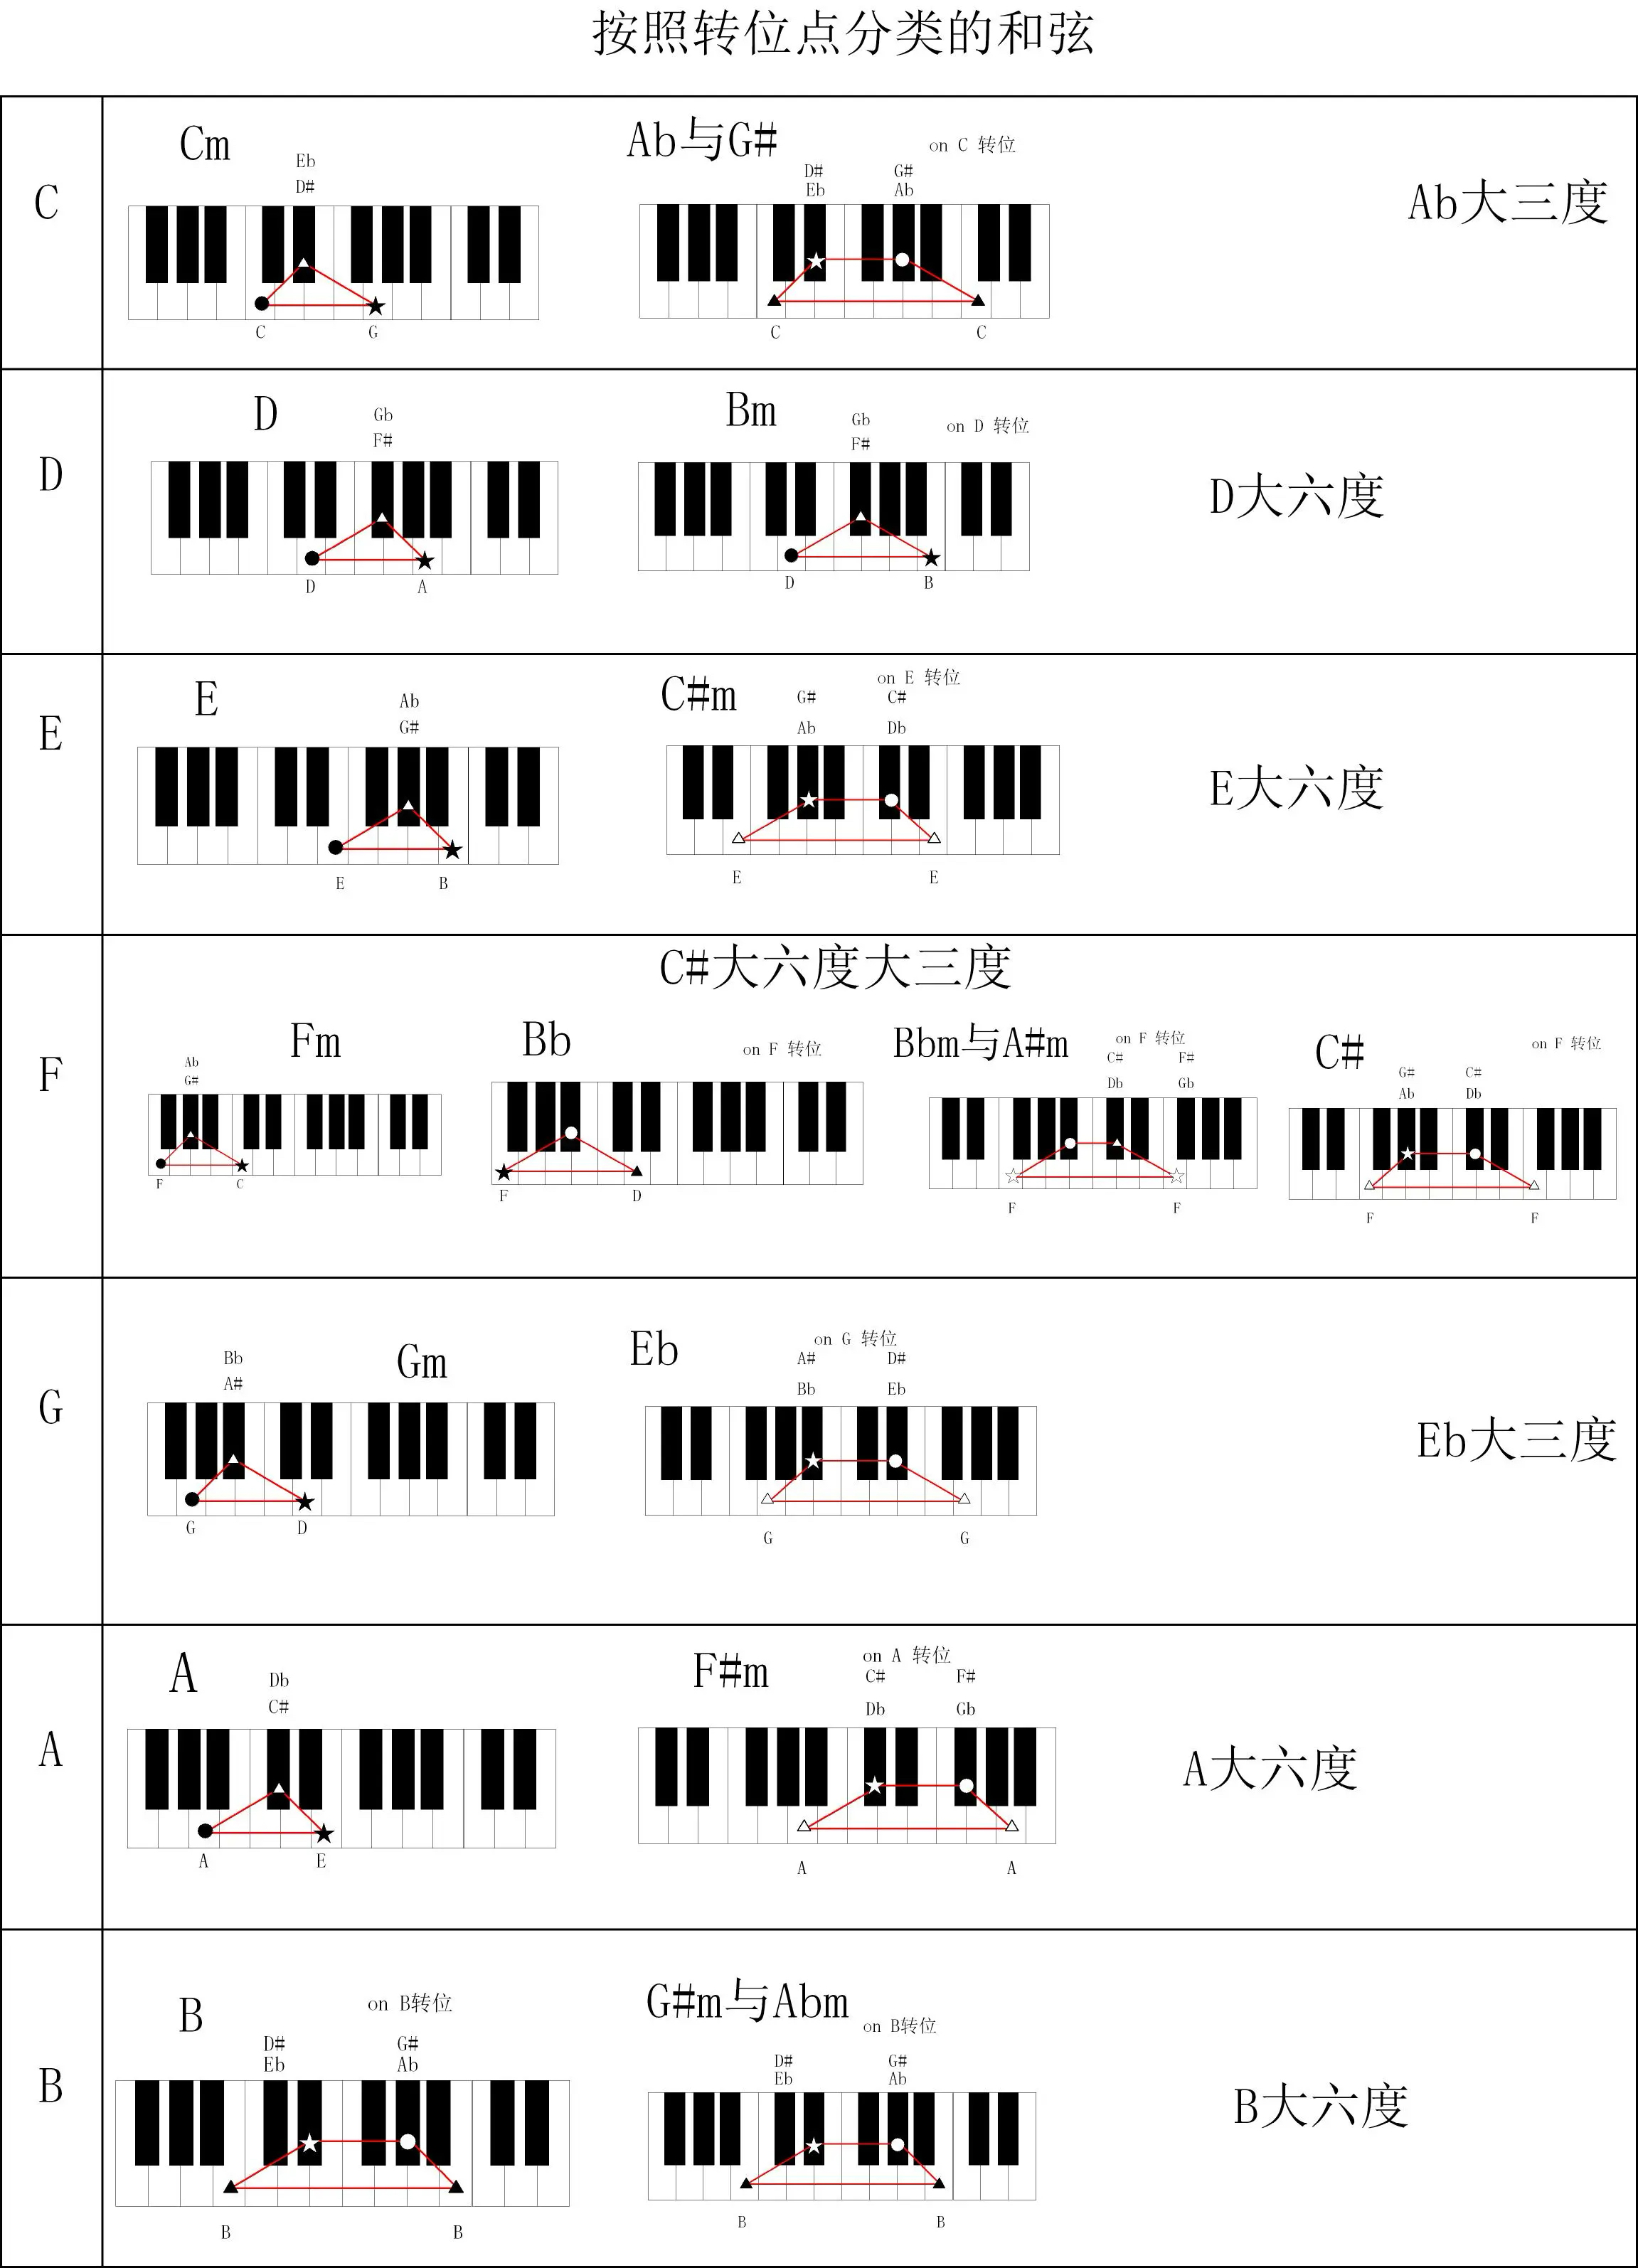 钢琴和弦转位应该怎么正确练习?有什么好的技巧,更快容易熟悉? 